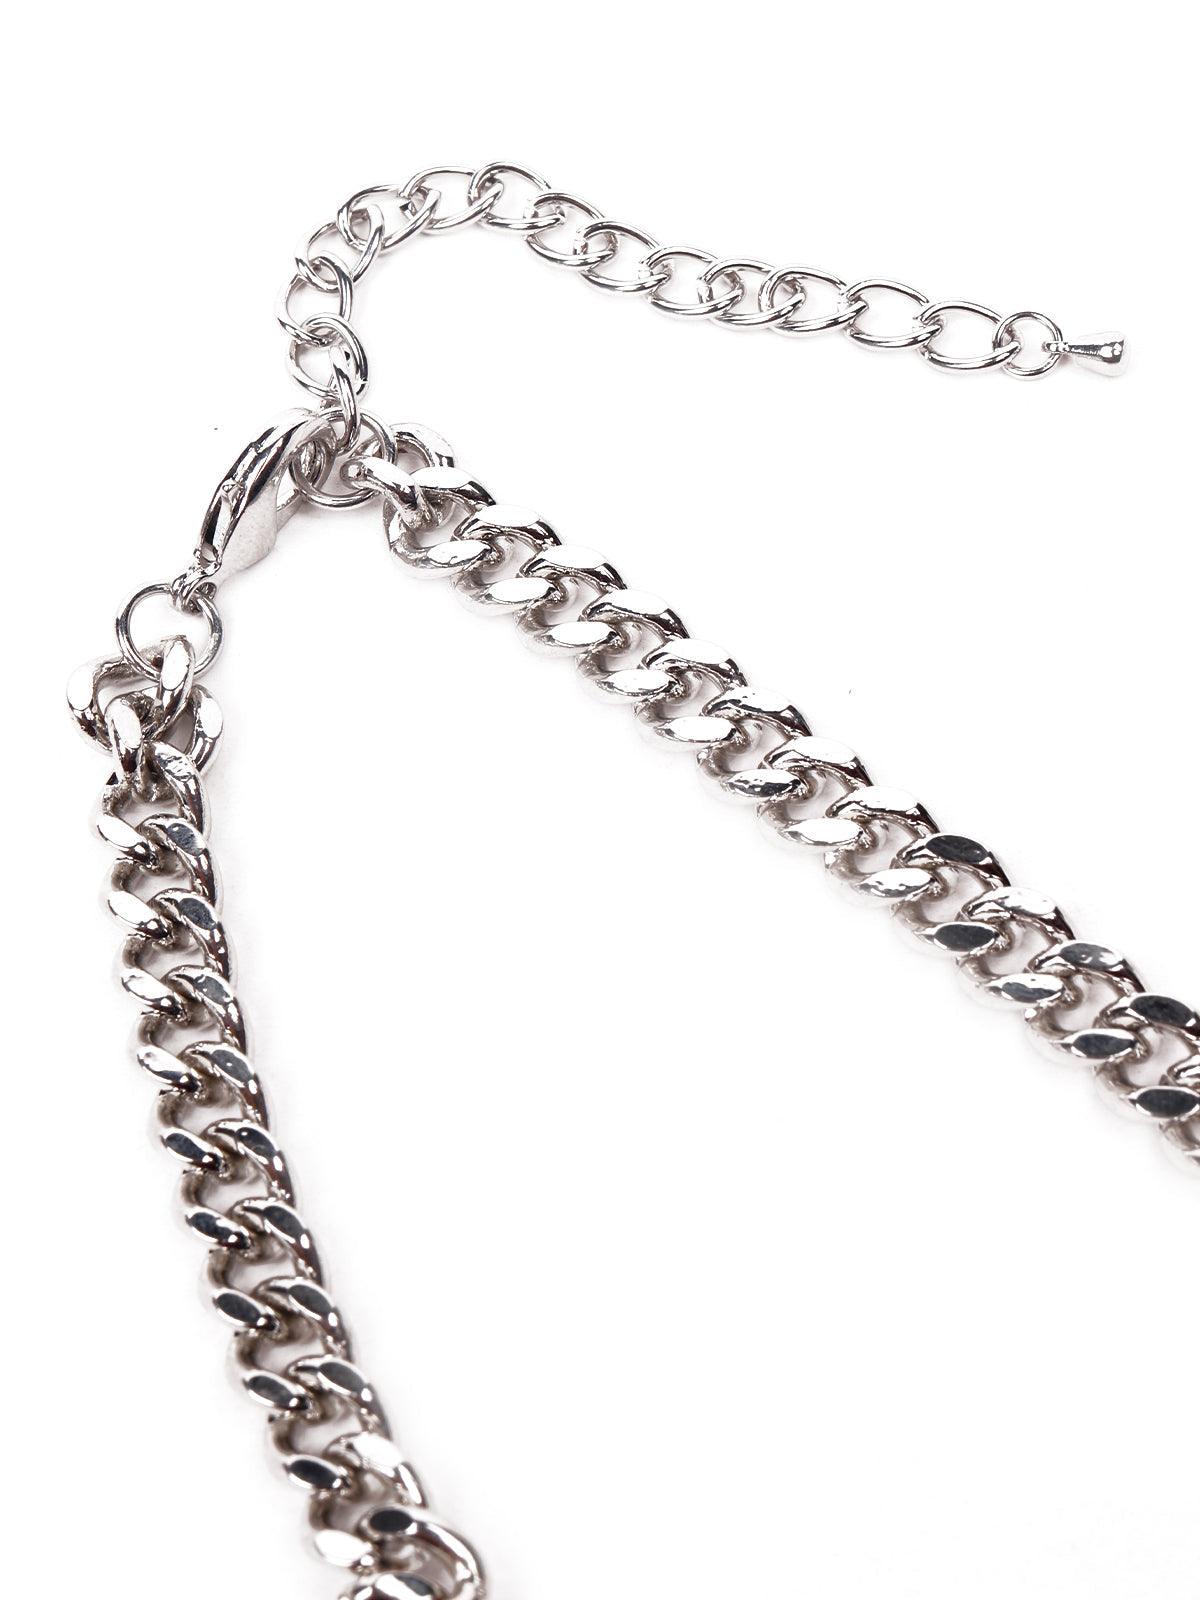 Gorgeous floral pendant silver necklace - Odette